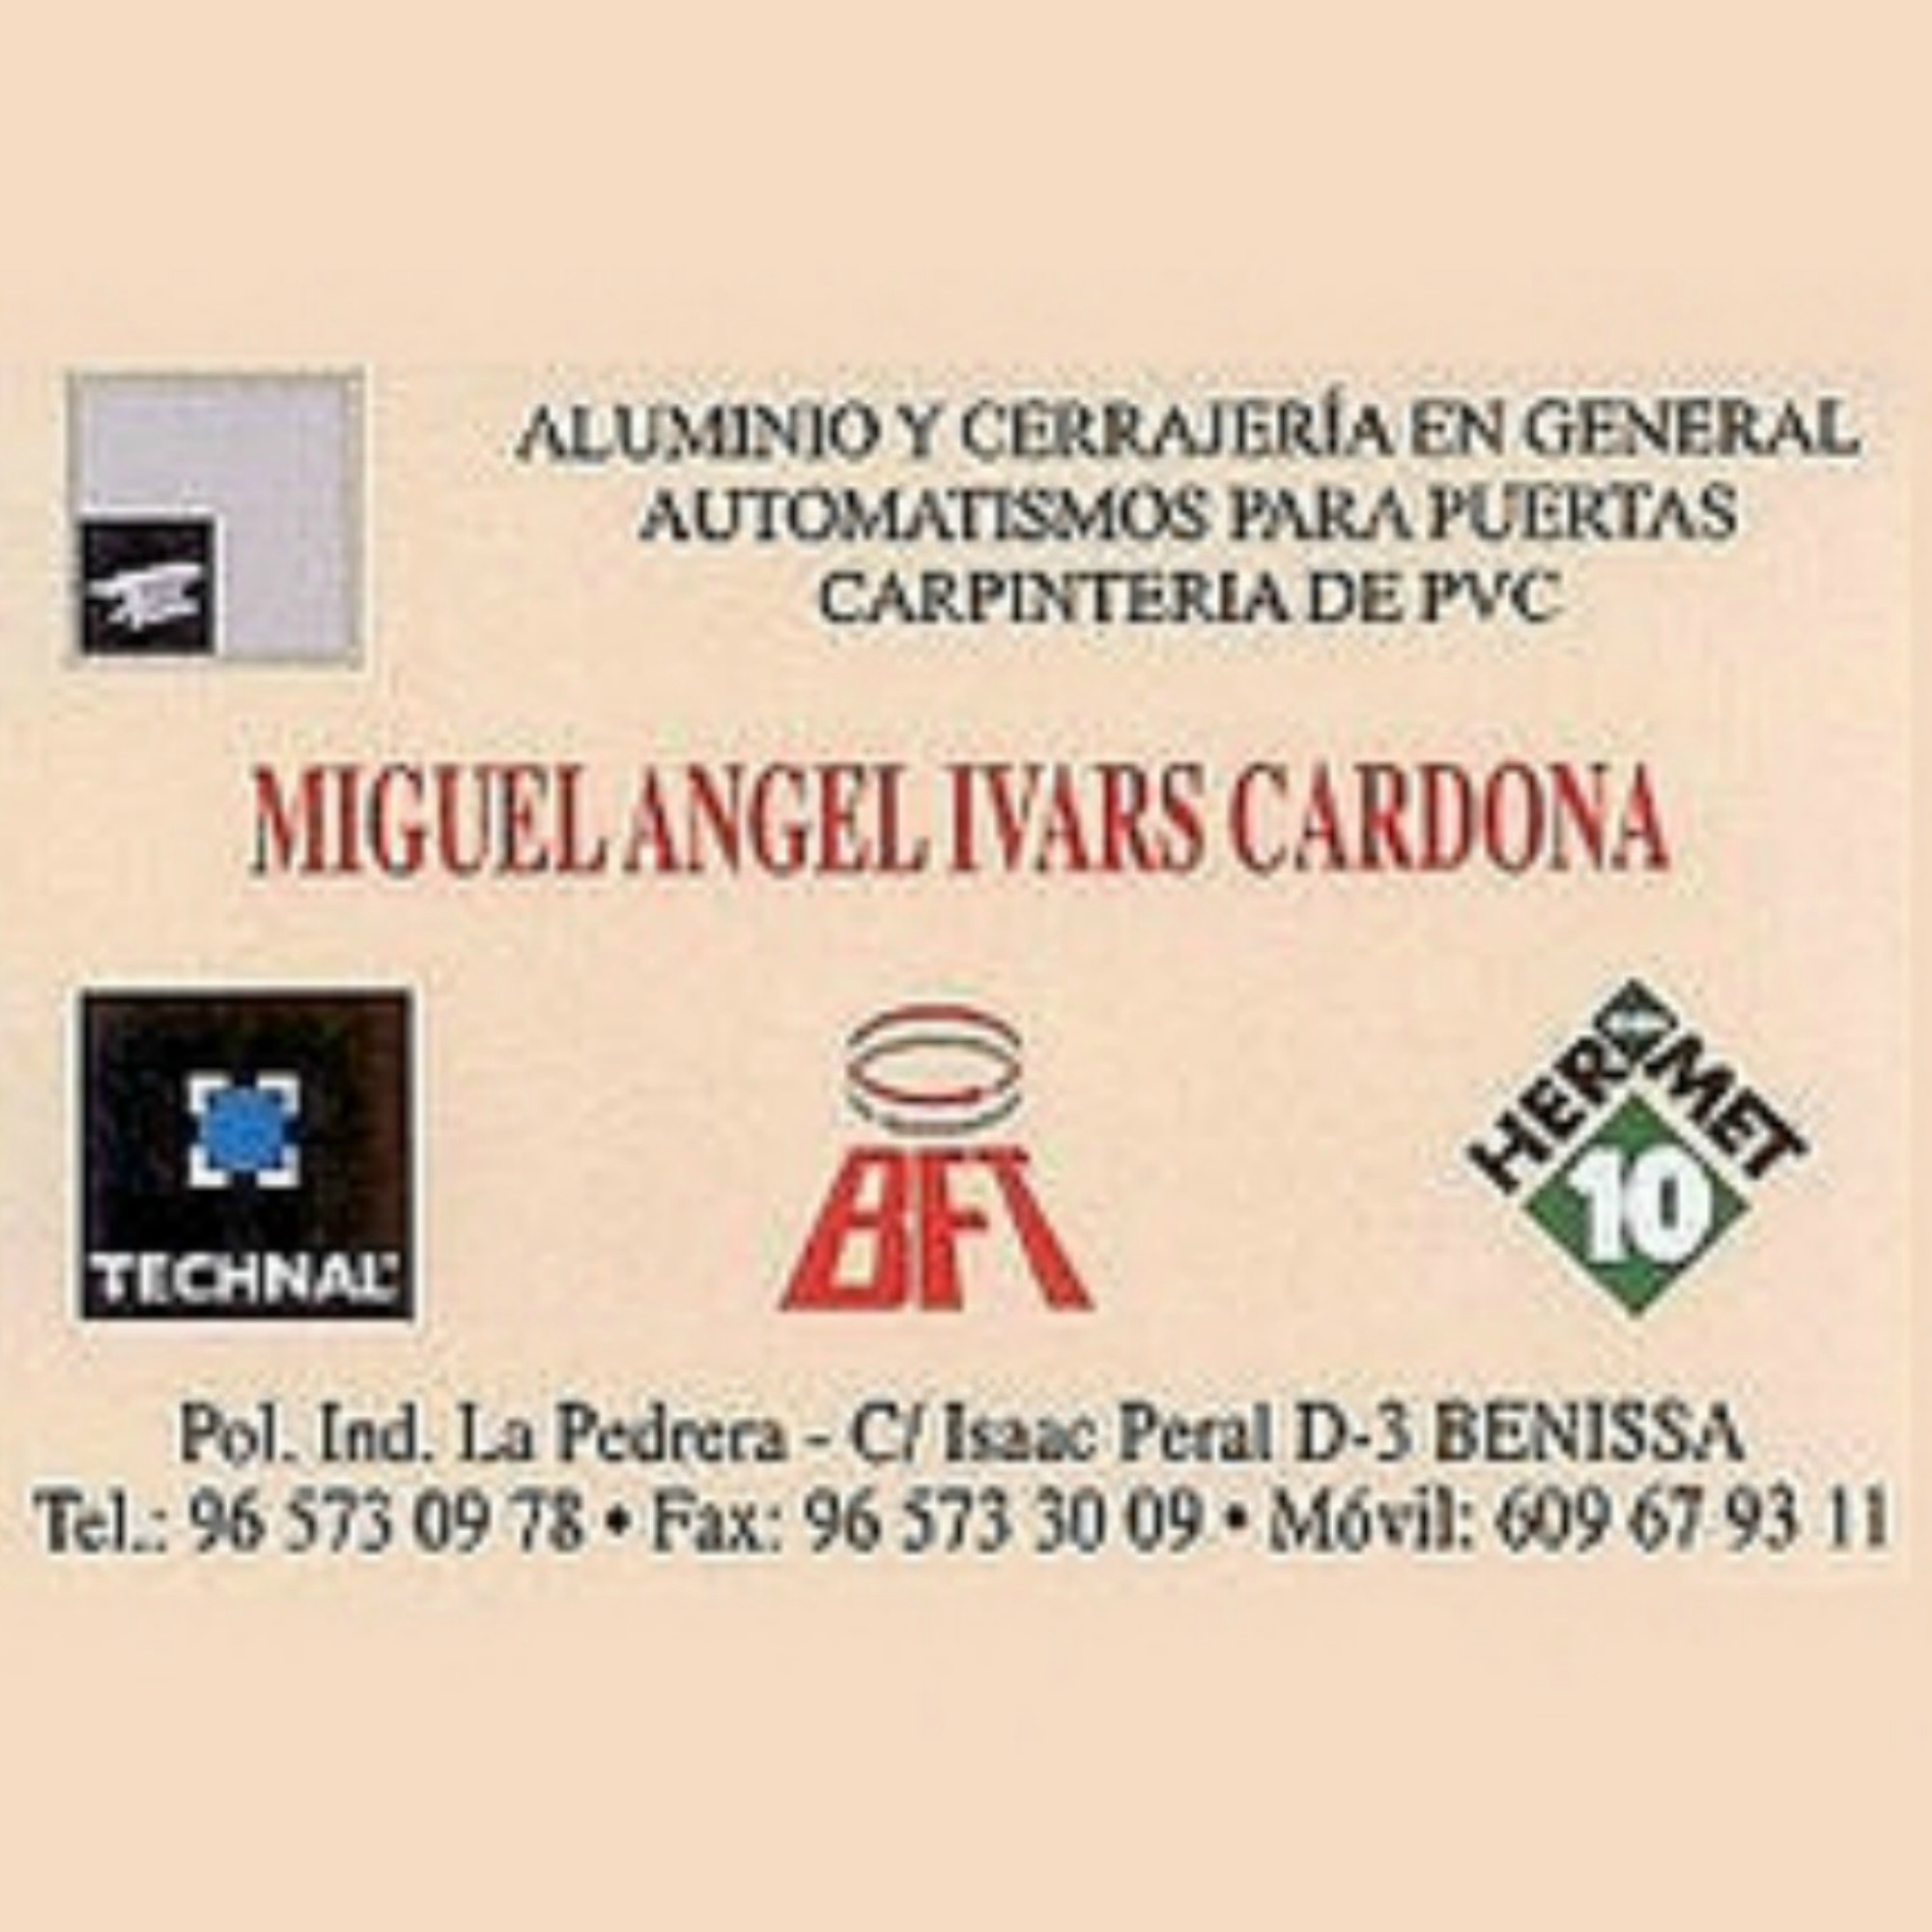 Miguel Angel Ivars Cardona